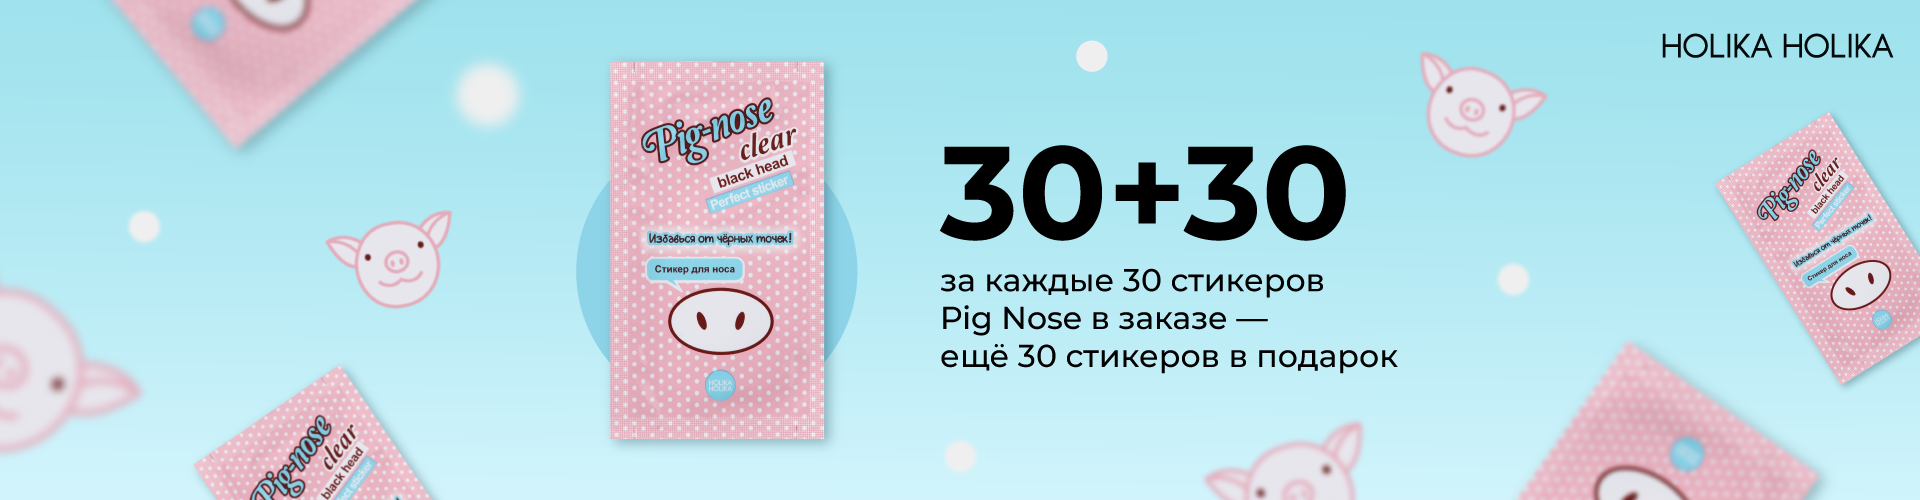 Акция 30+30 на стикеры Pig Nose: за каждые 30 стикеров в заказе 30 стикеров в подарок